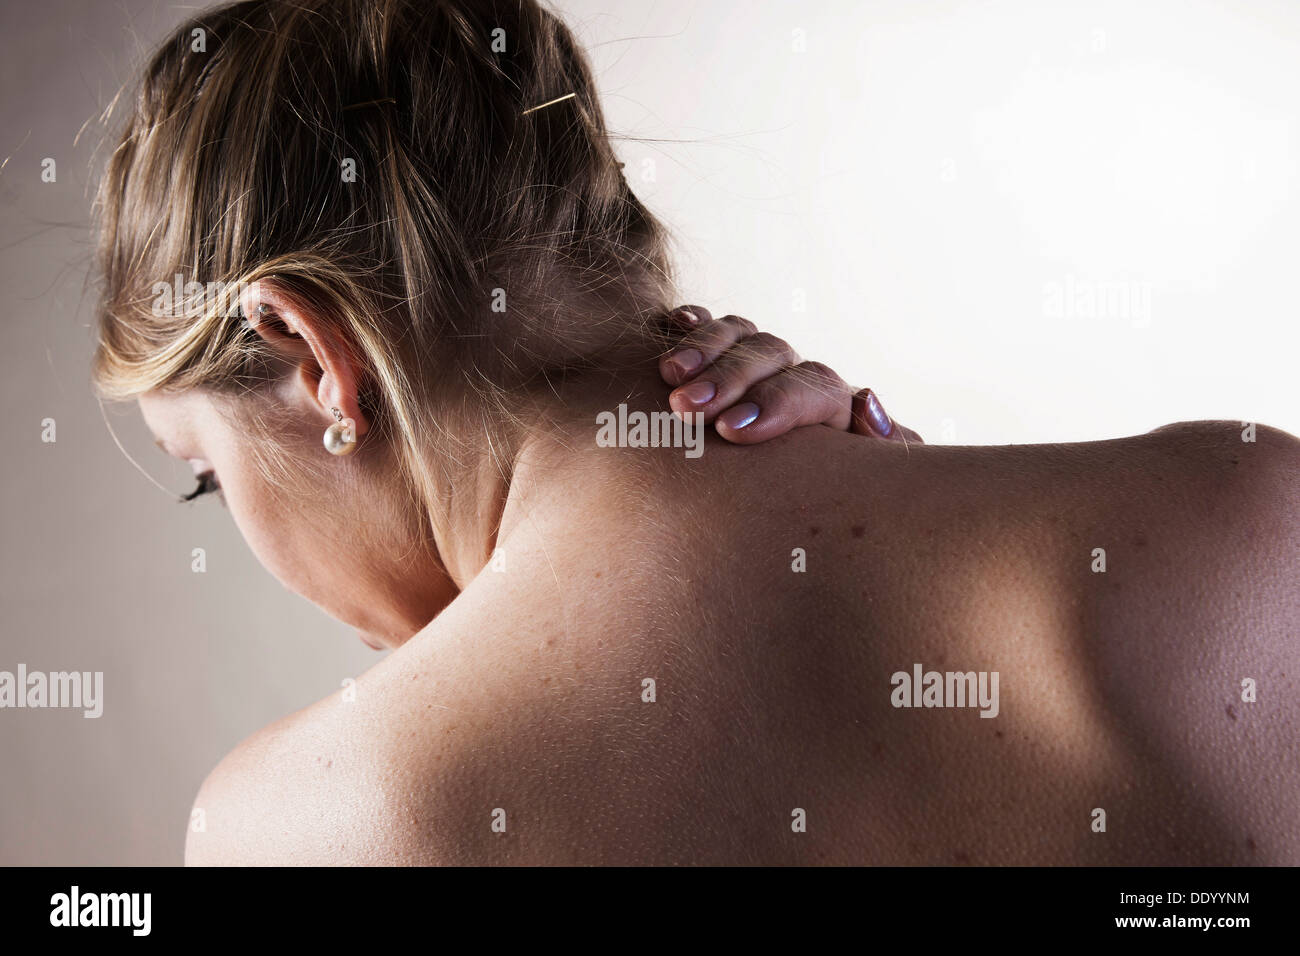 Junge Frau mit Nackenschmerzen, Ansicht von hinten Stockfoto